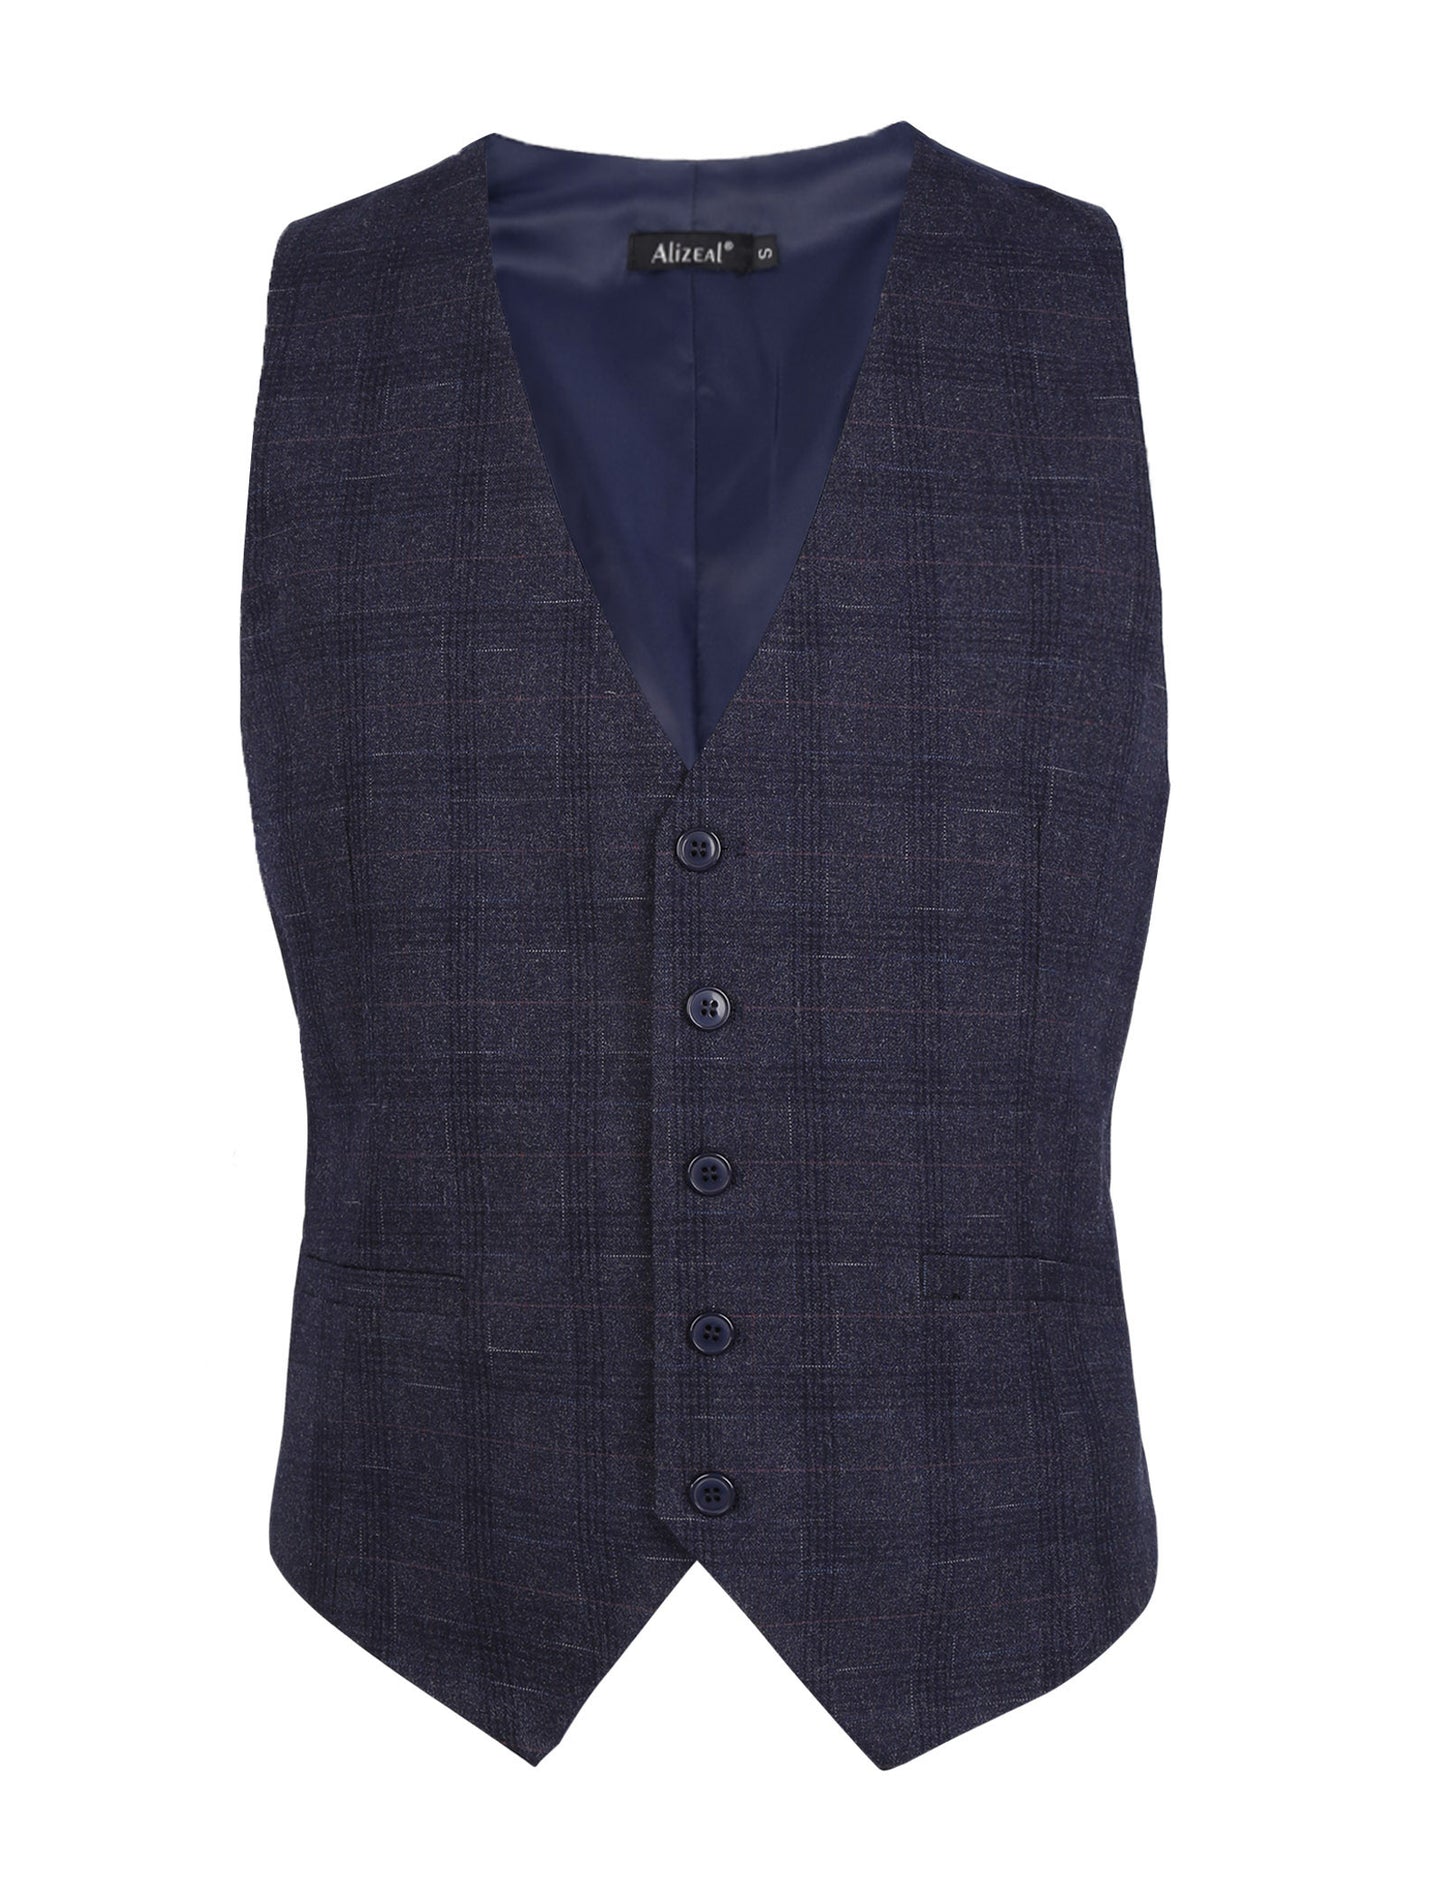 Men's Plaid Business Suit Vest V-Neck Regular Fit Checked Tuxedo Waistcoat, 190-Hale Navy